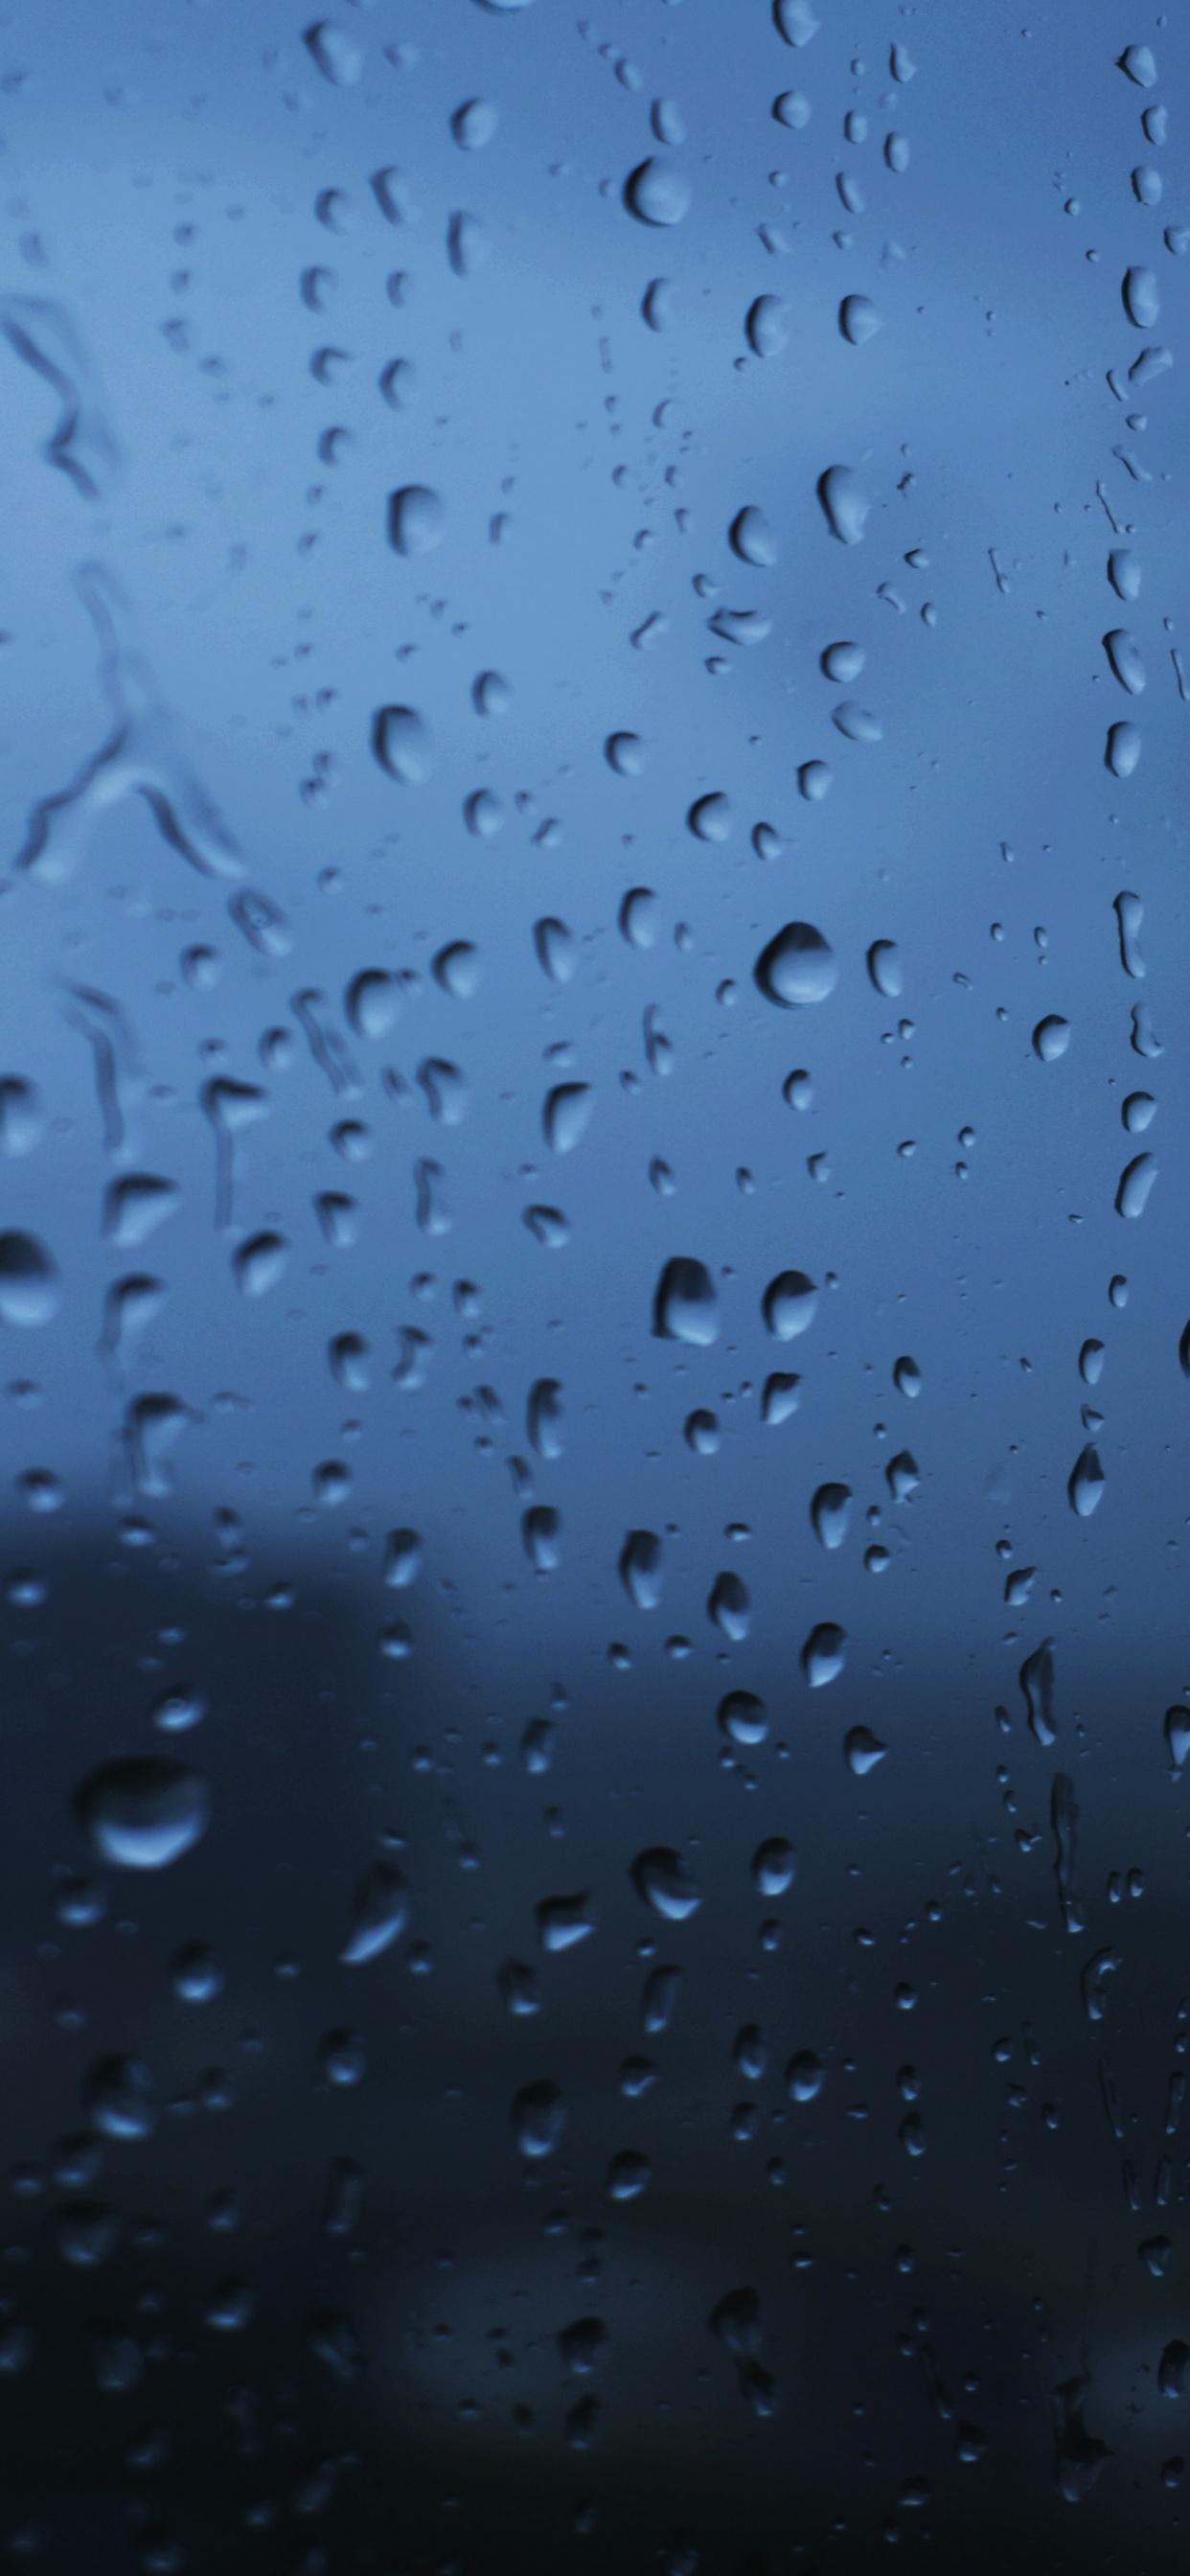 Tropfen, Regen, Blau, Wasser, Nieselregen. Wallpaper in 1242x2688 Resolution